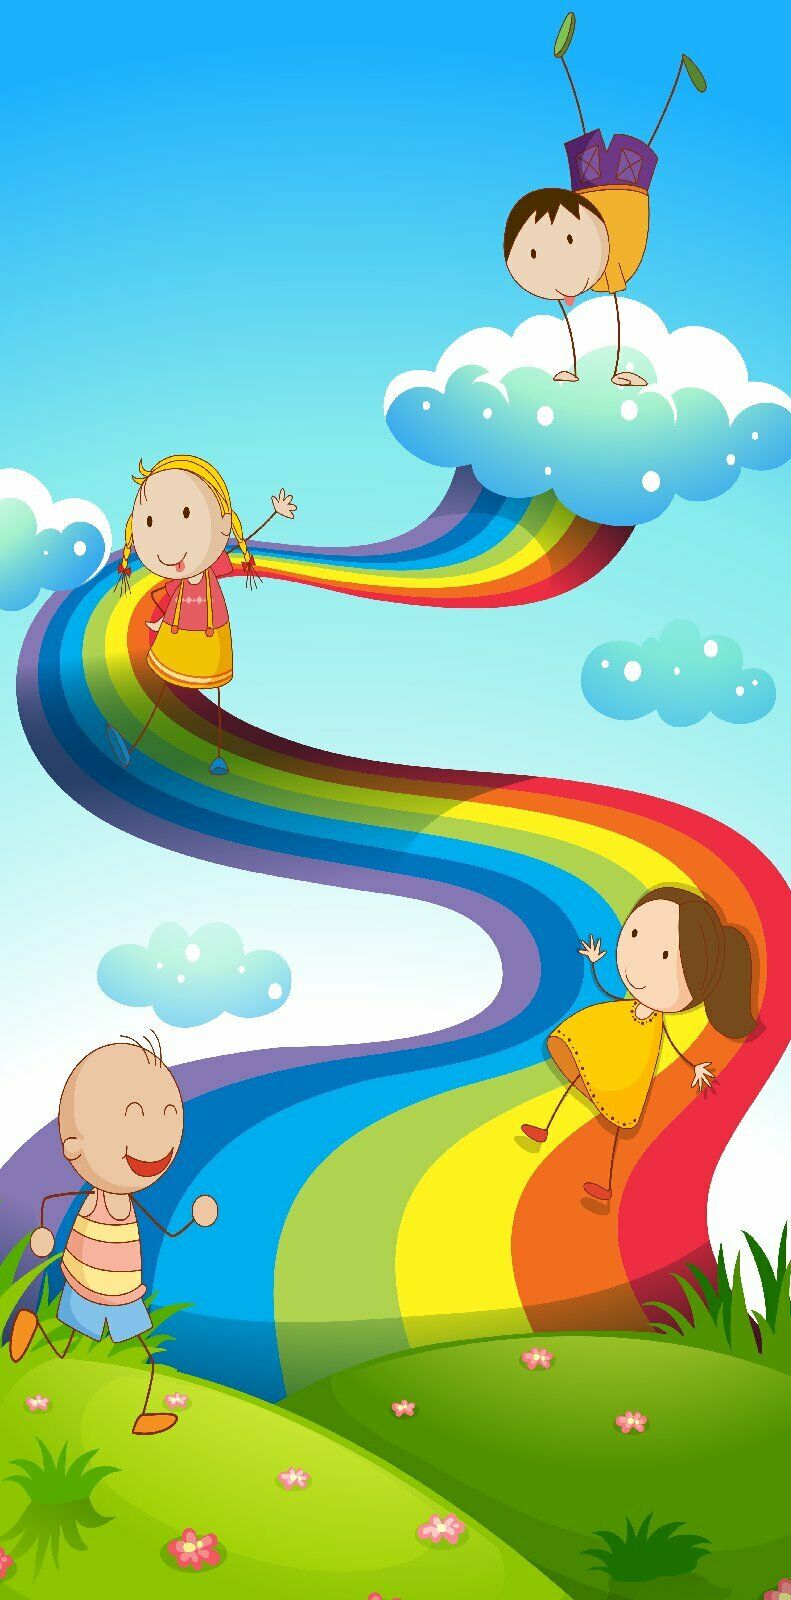 Türtapete Regenbogen Türposter 100x200cm 100x200cm selbstklebend Rutsche Kinder Spielen Wolke